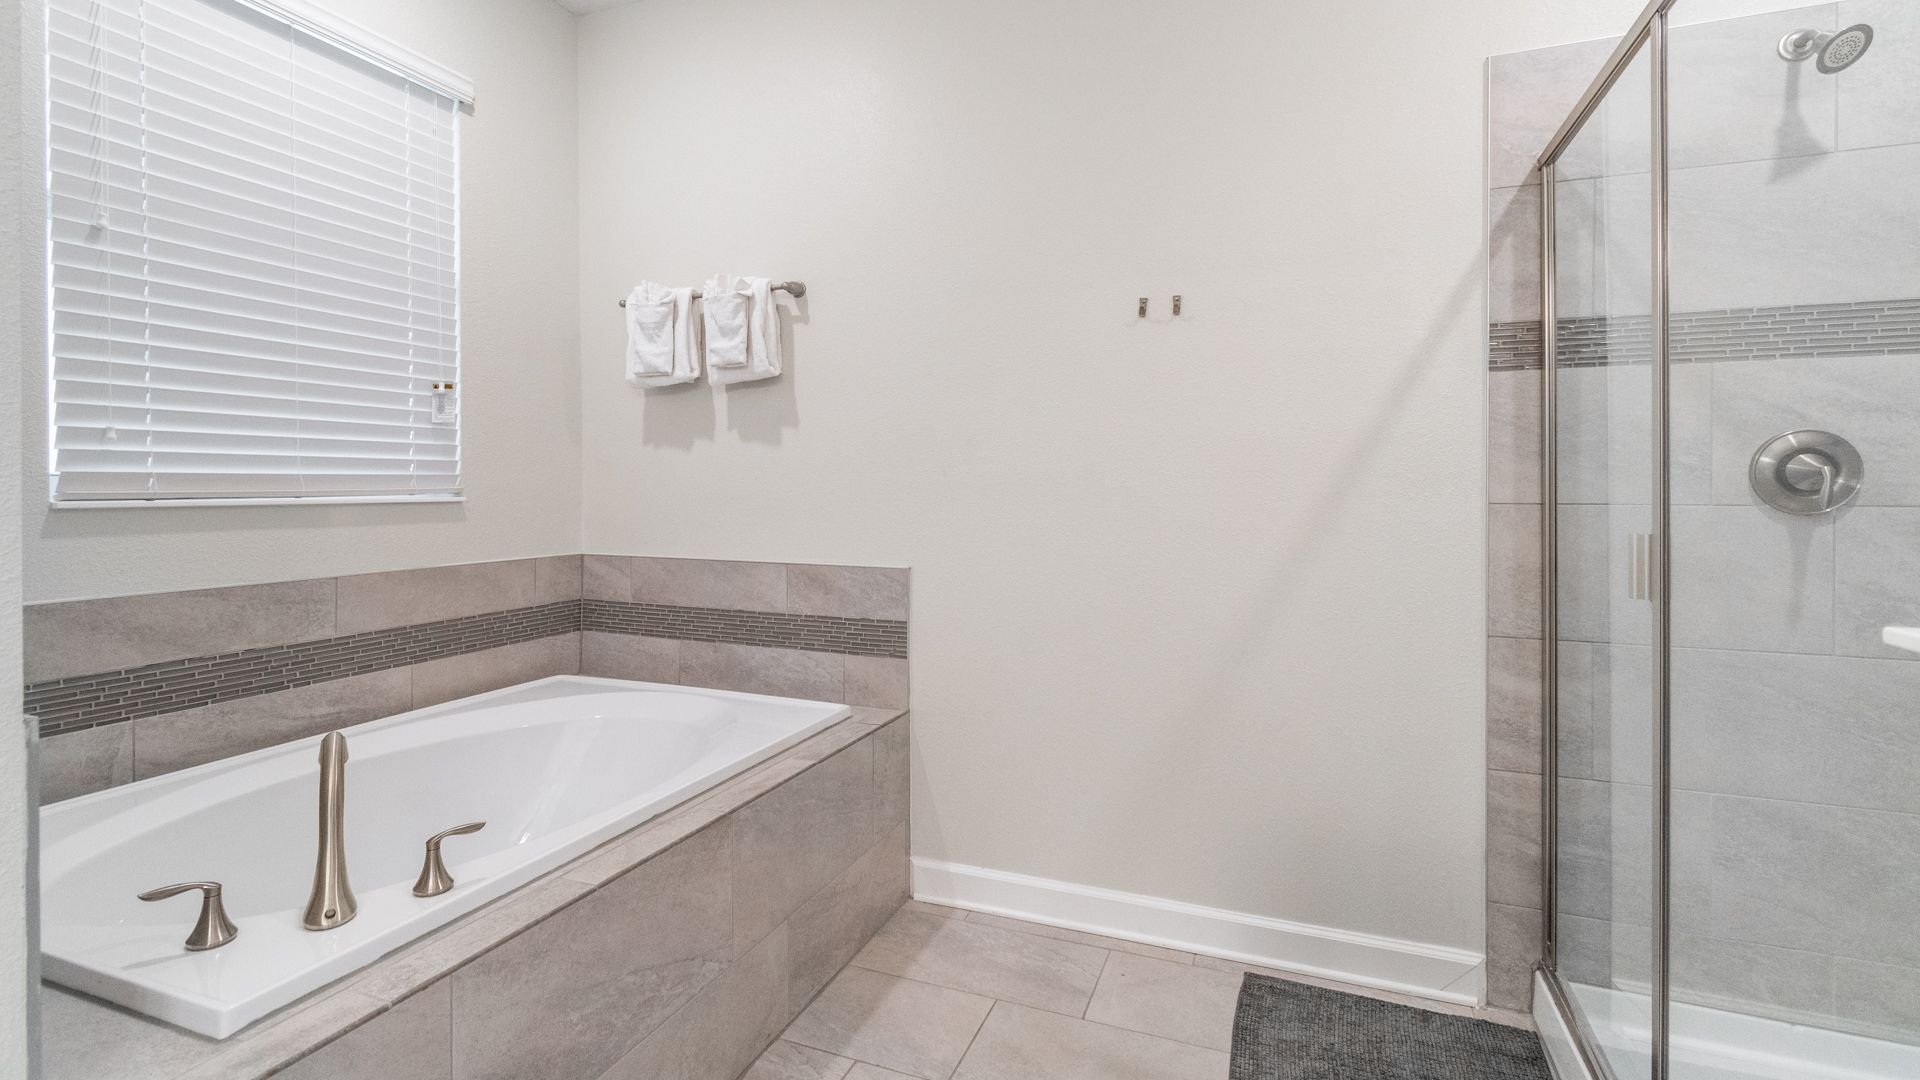 Master Bathroom 1 (Angle)
Tub and Shower